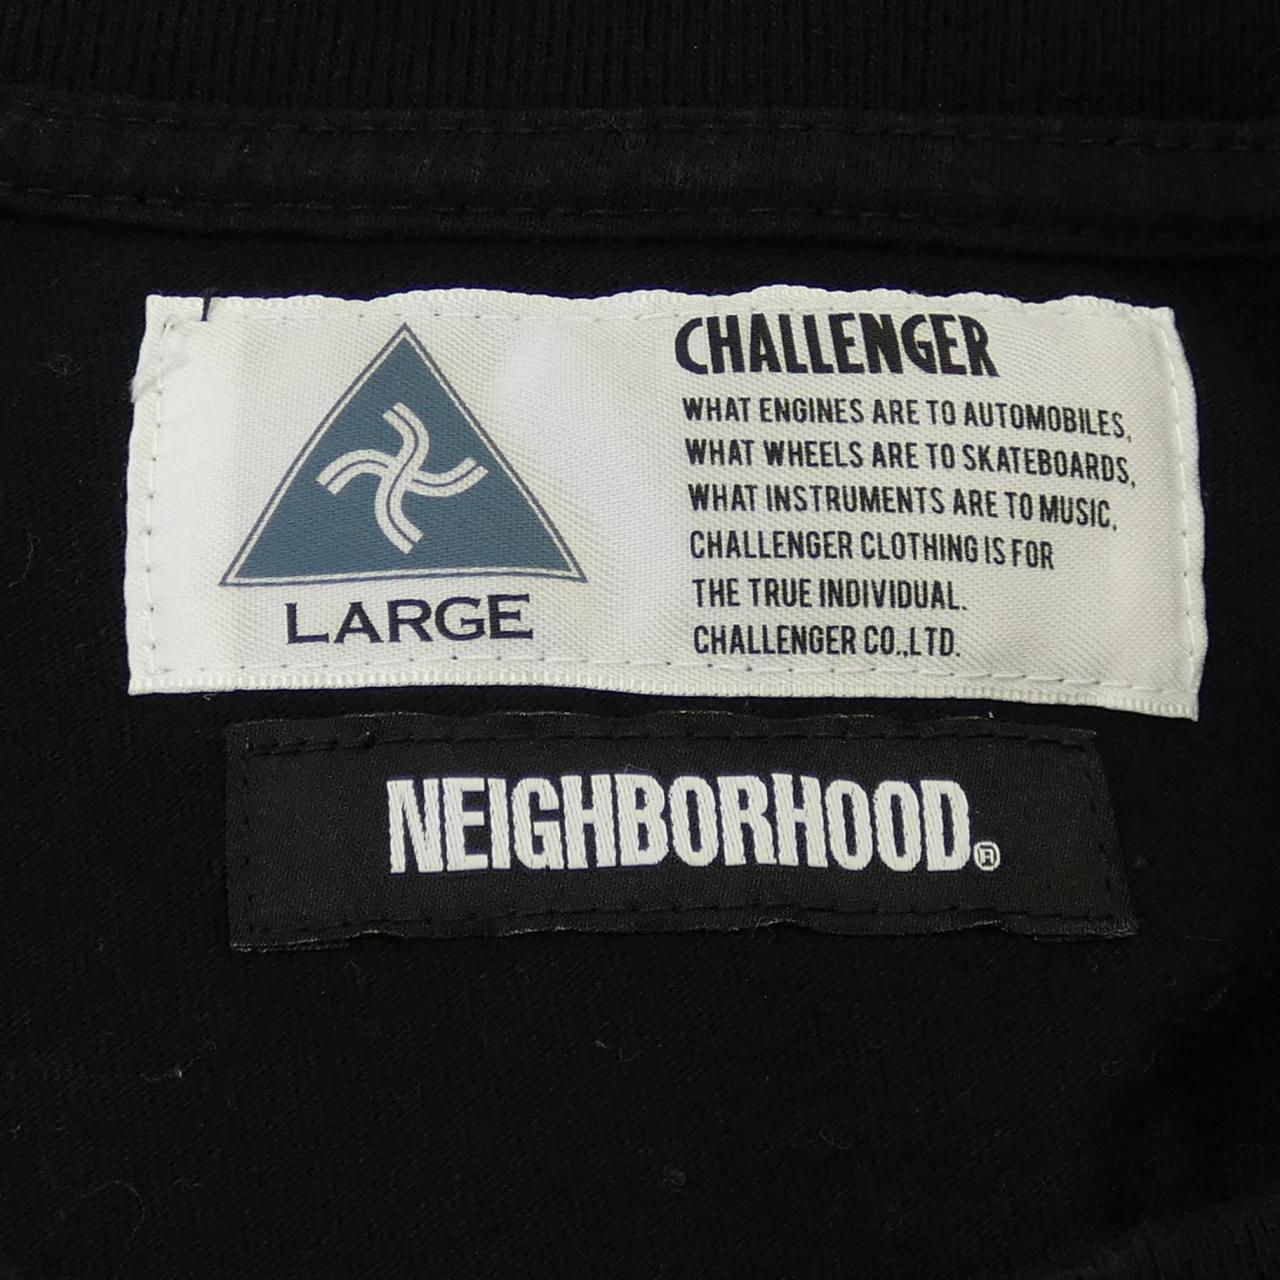 Neighborhood NEIGHBORHOOD T-shirt